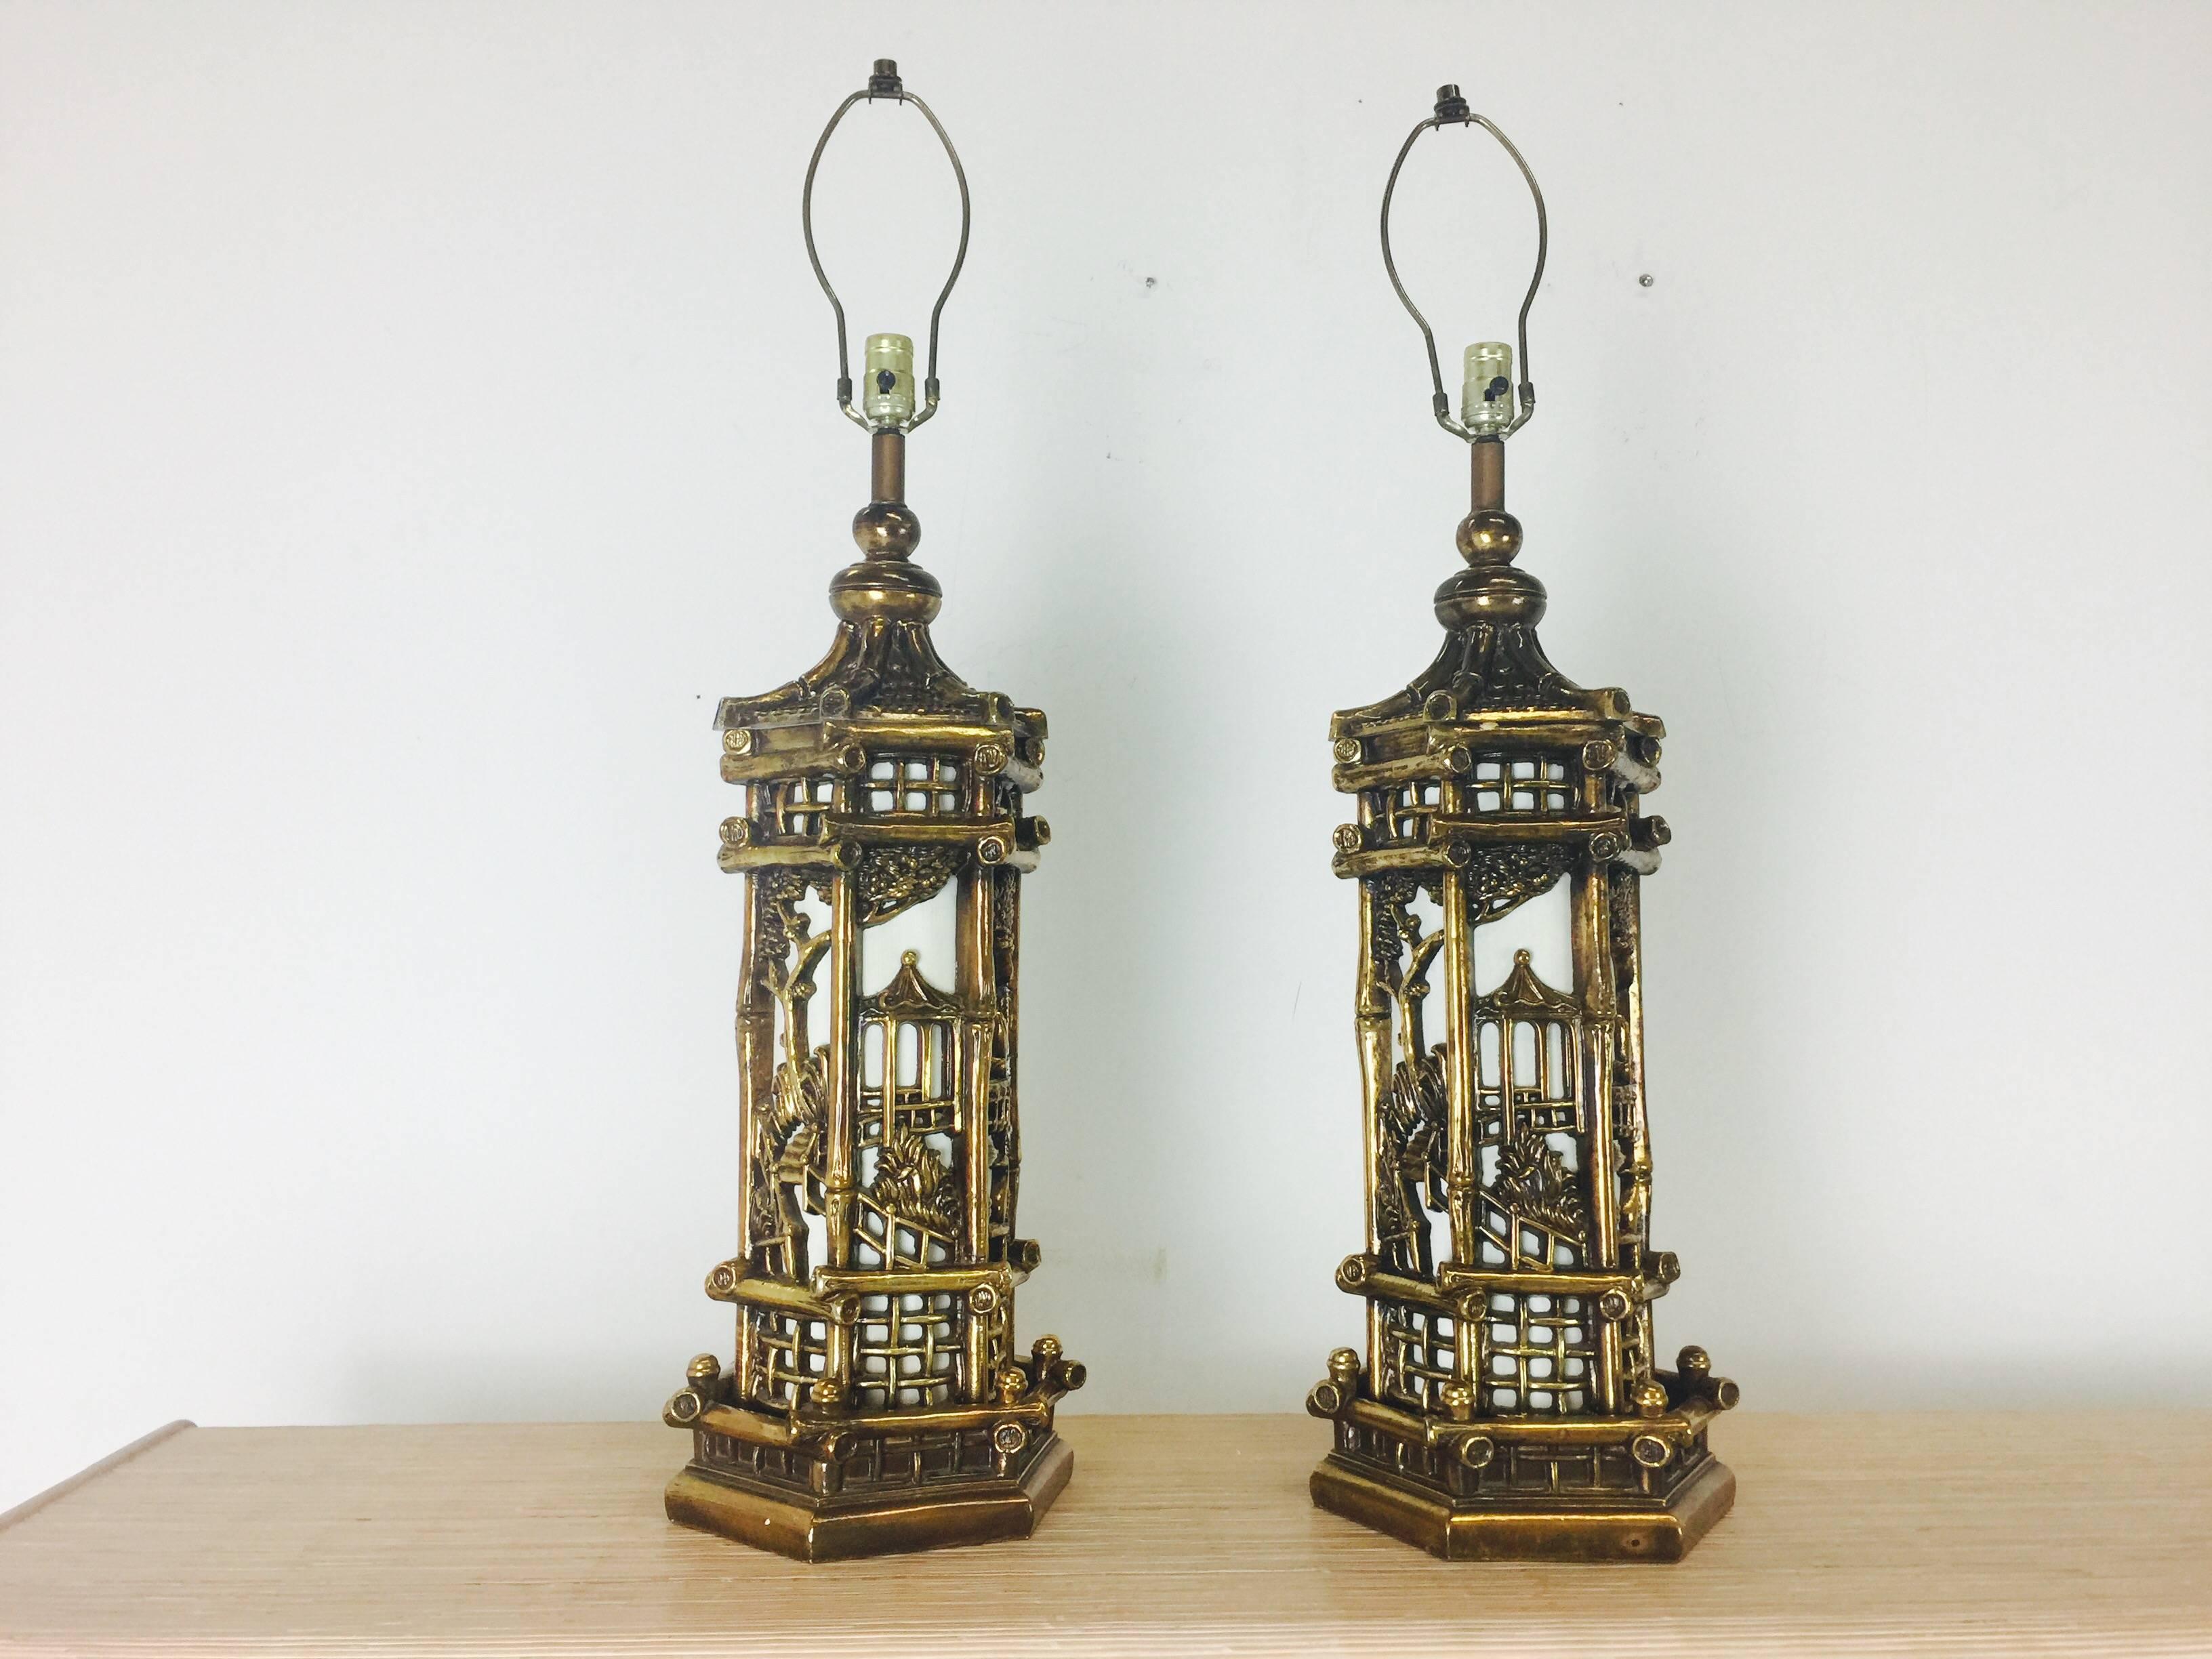 Paar goldene Chinoiserie-Lampen im Stil von James Mont. Diese Lampen leuchten nicht nur von oben, sondern auch im Inneren des Körpers. Die Stücke weisen altersbedingte Abnutzungserscheinungen auf, etwa aus den 1950er Jahren.

Abmessungen: 10